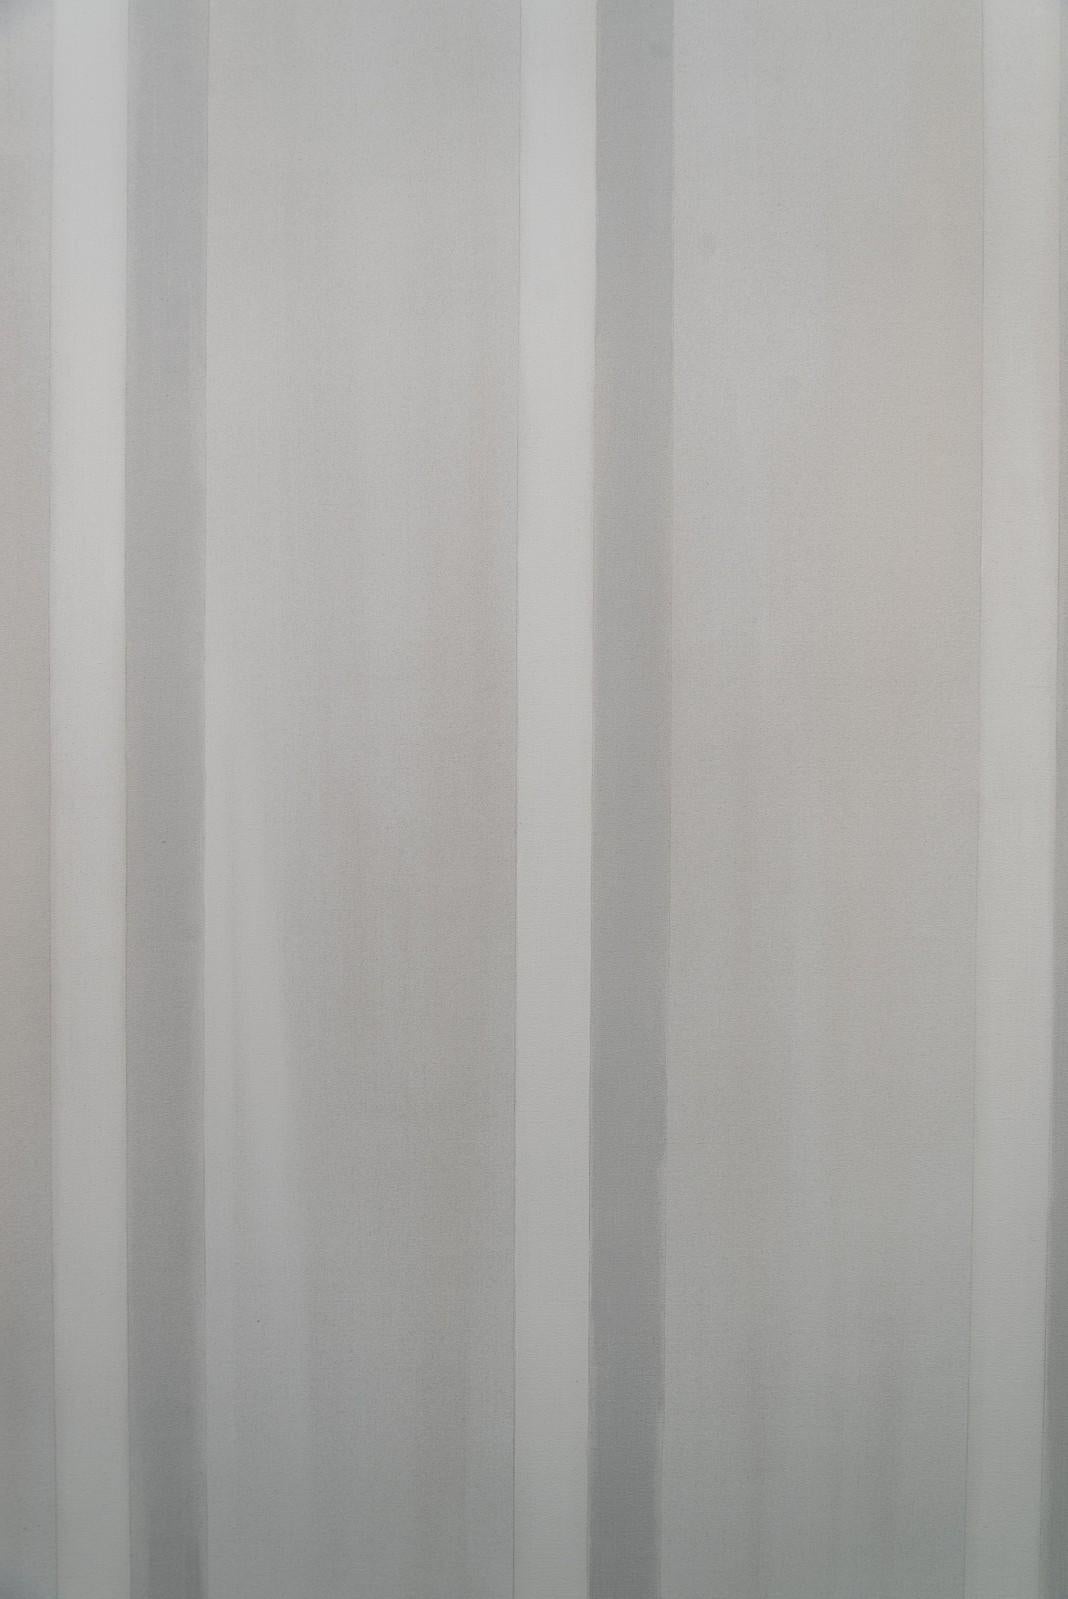 Alles und nichts - groß, ruhig, grau, vertikale Streifen (Grau), Abstract Painting, von Milly Ristvedt